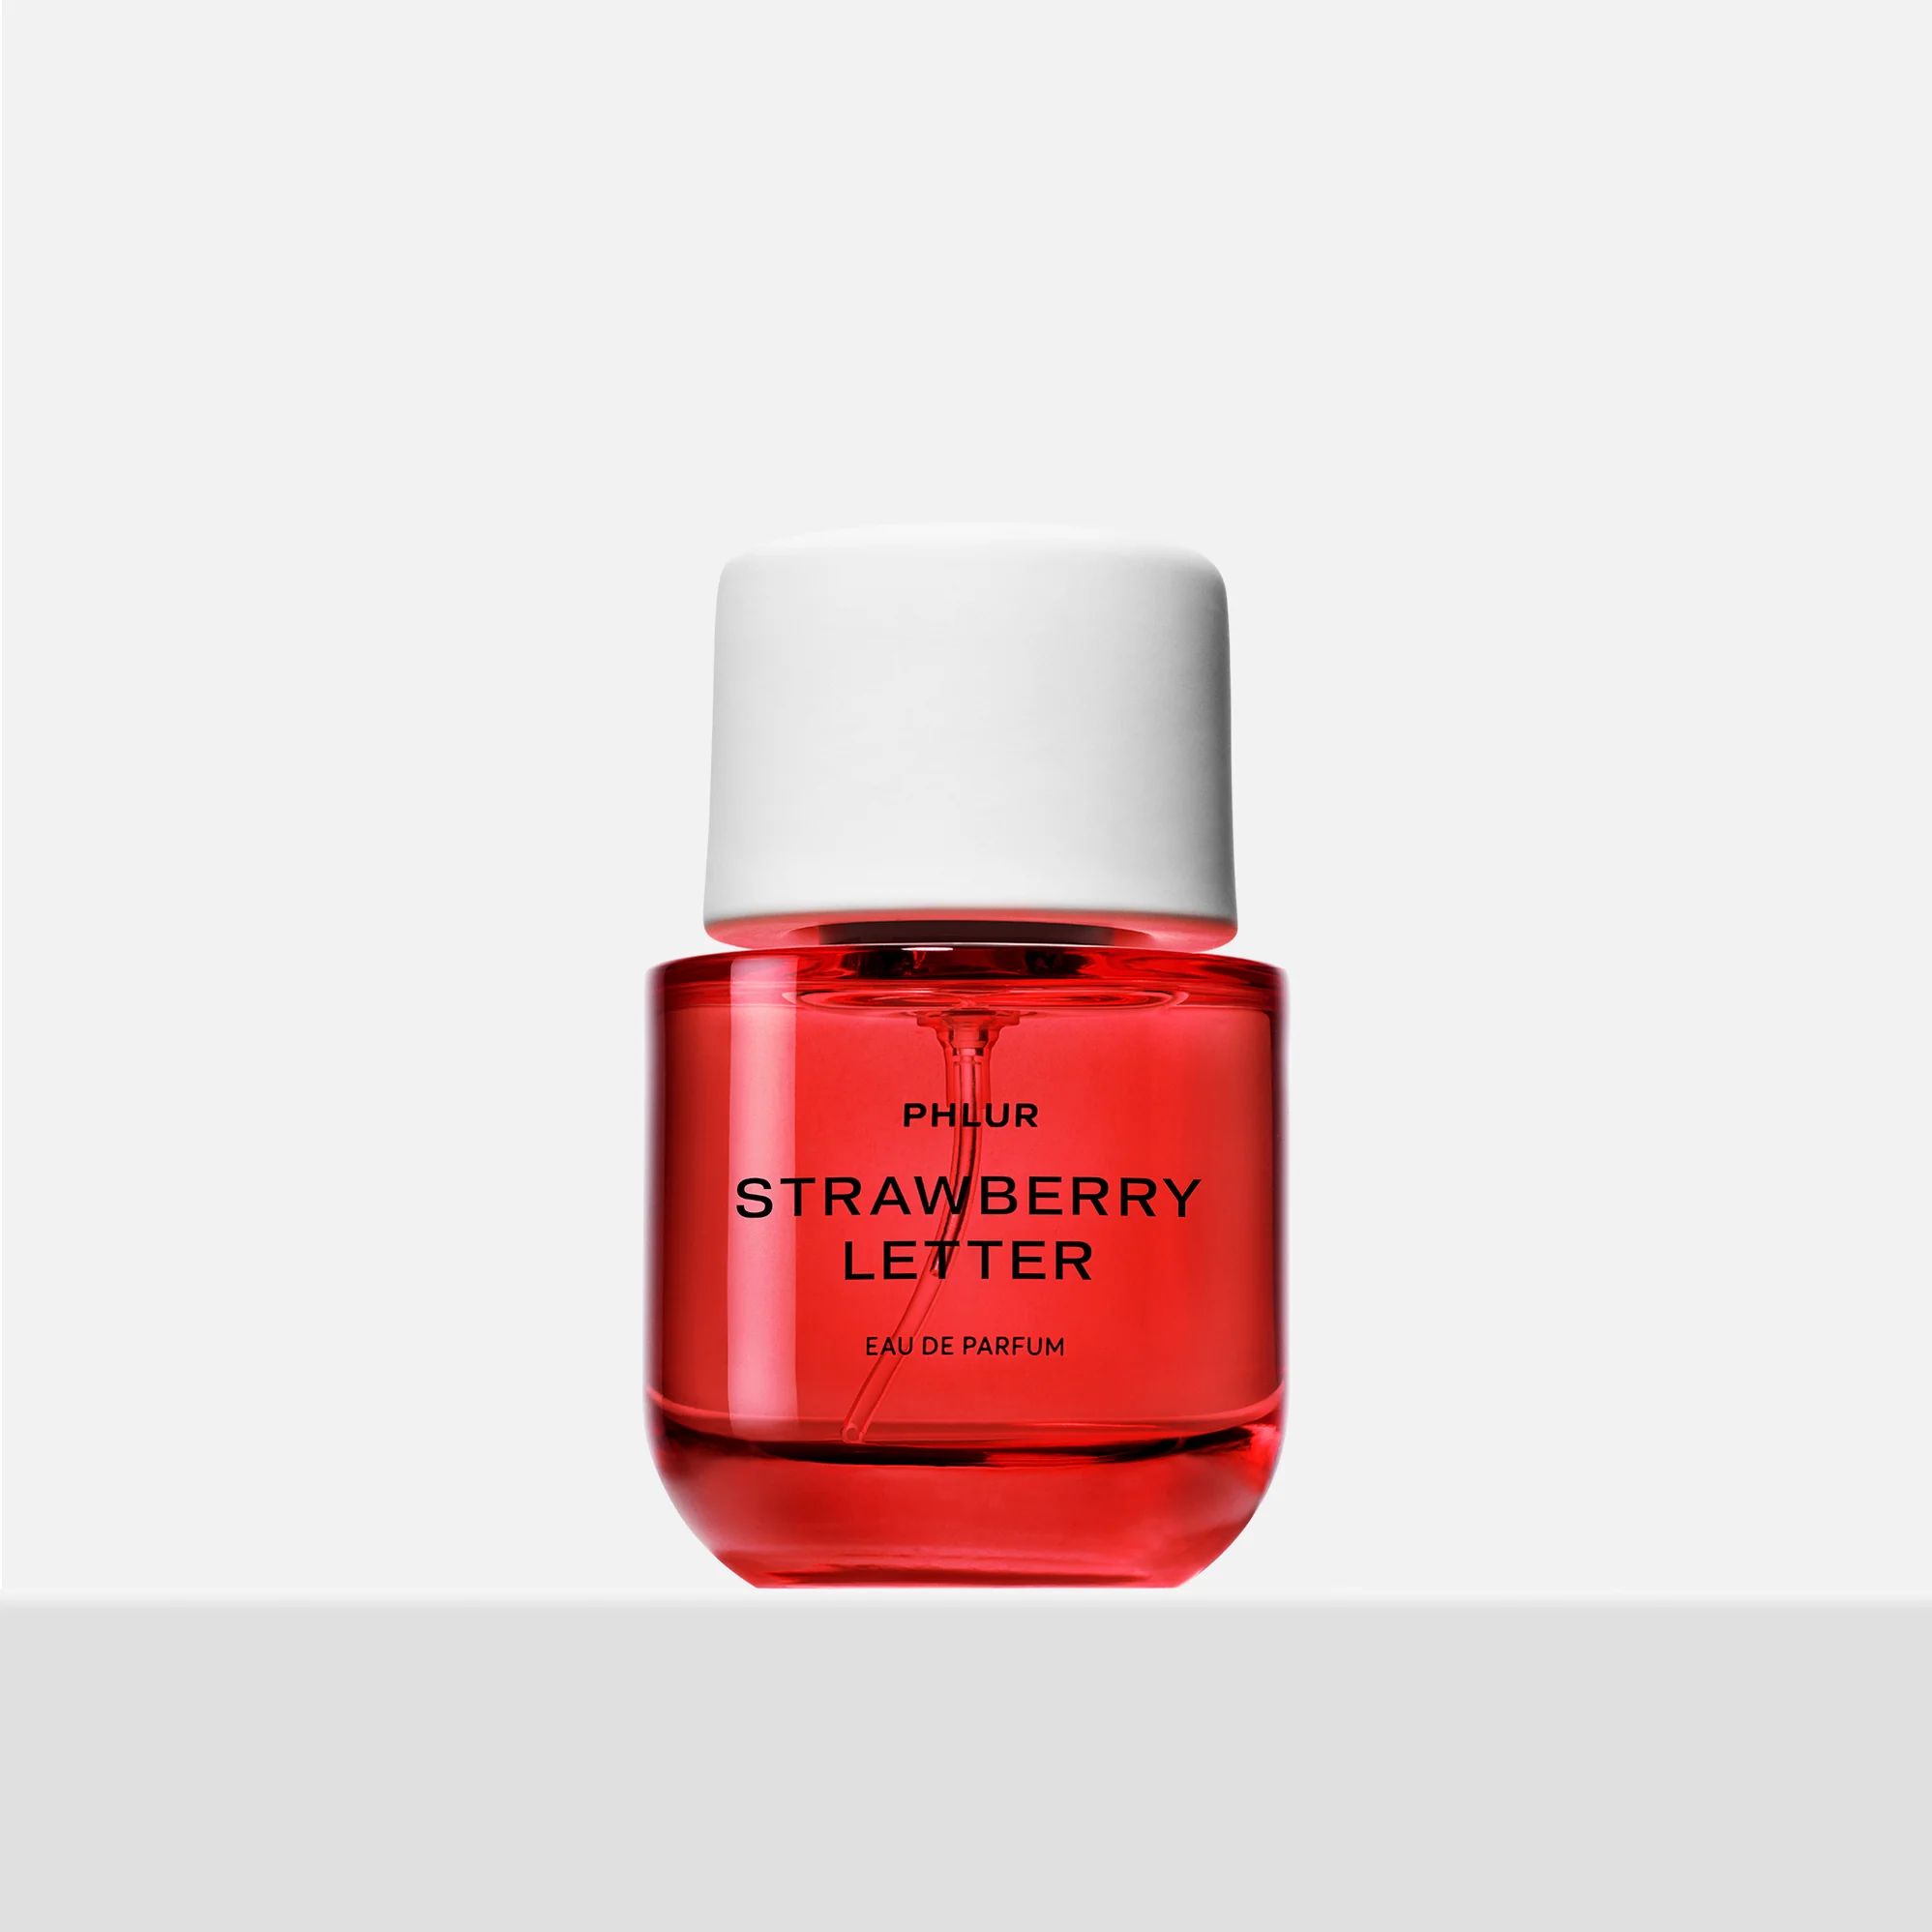 Strawberry Letter Perfume - Full Size Fragrance - Phlur | PHLUR